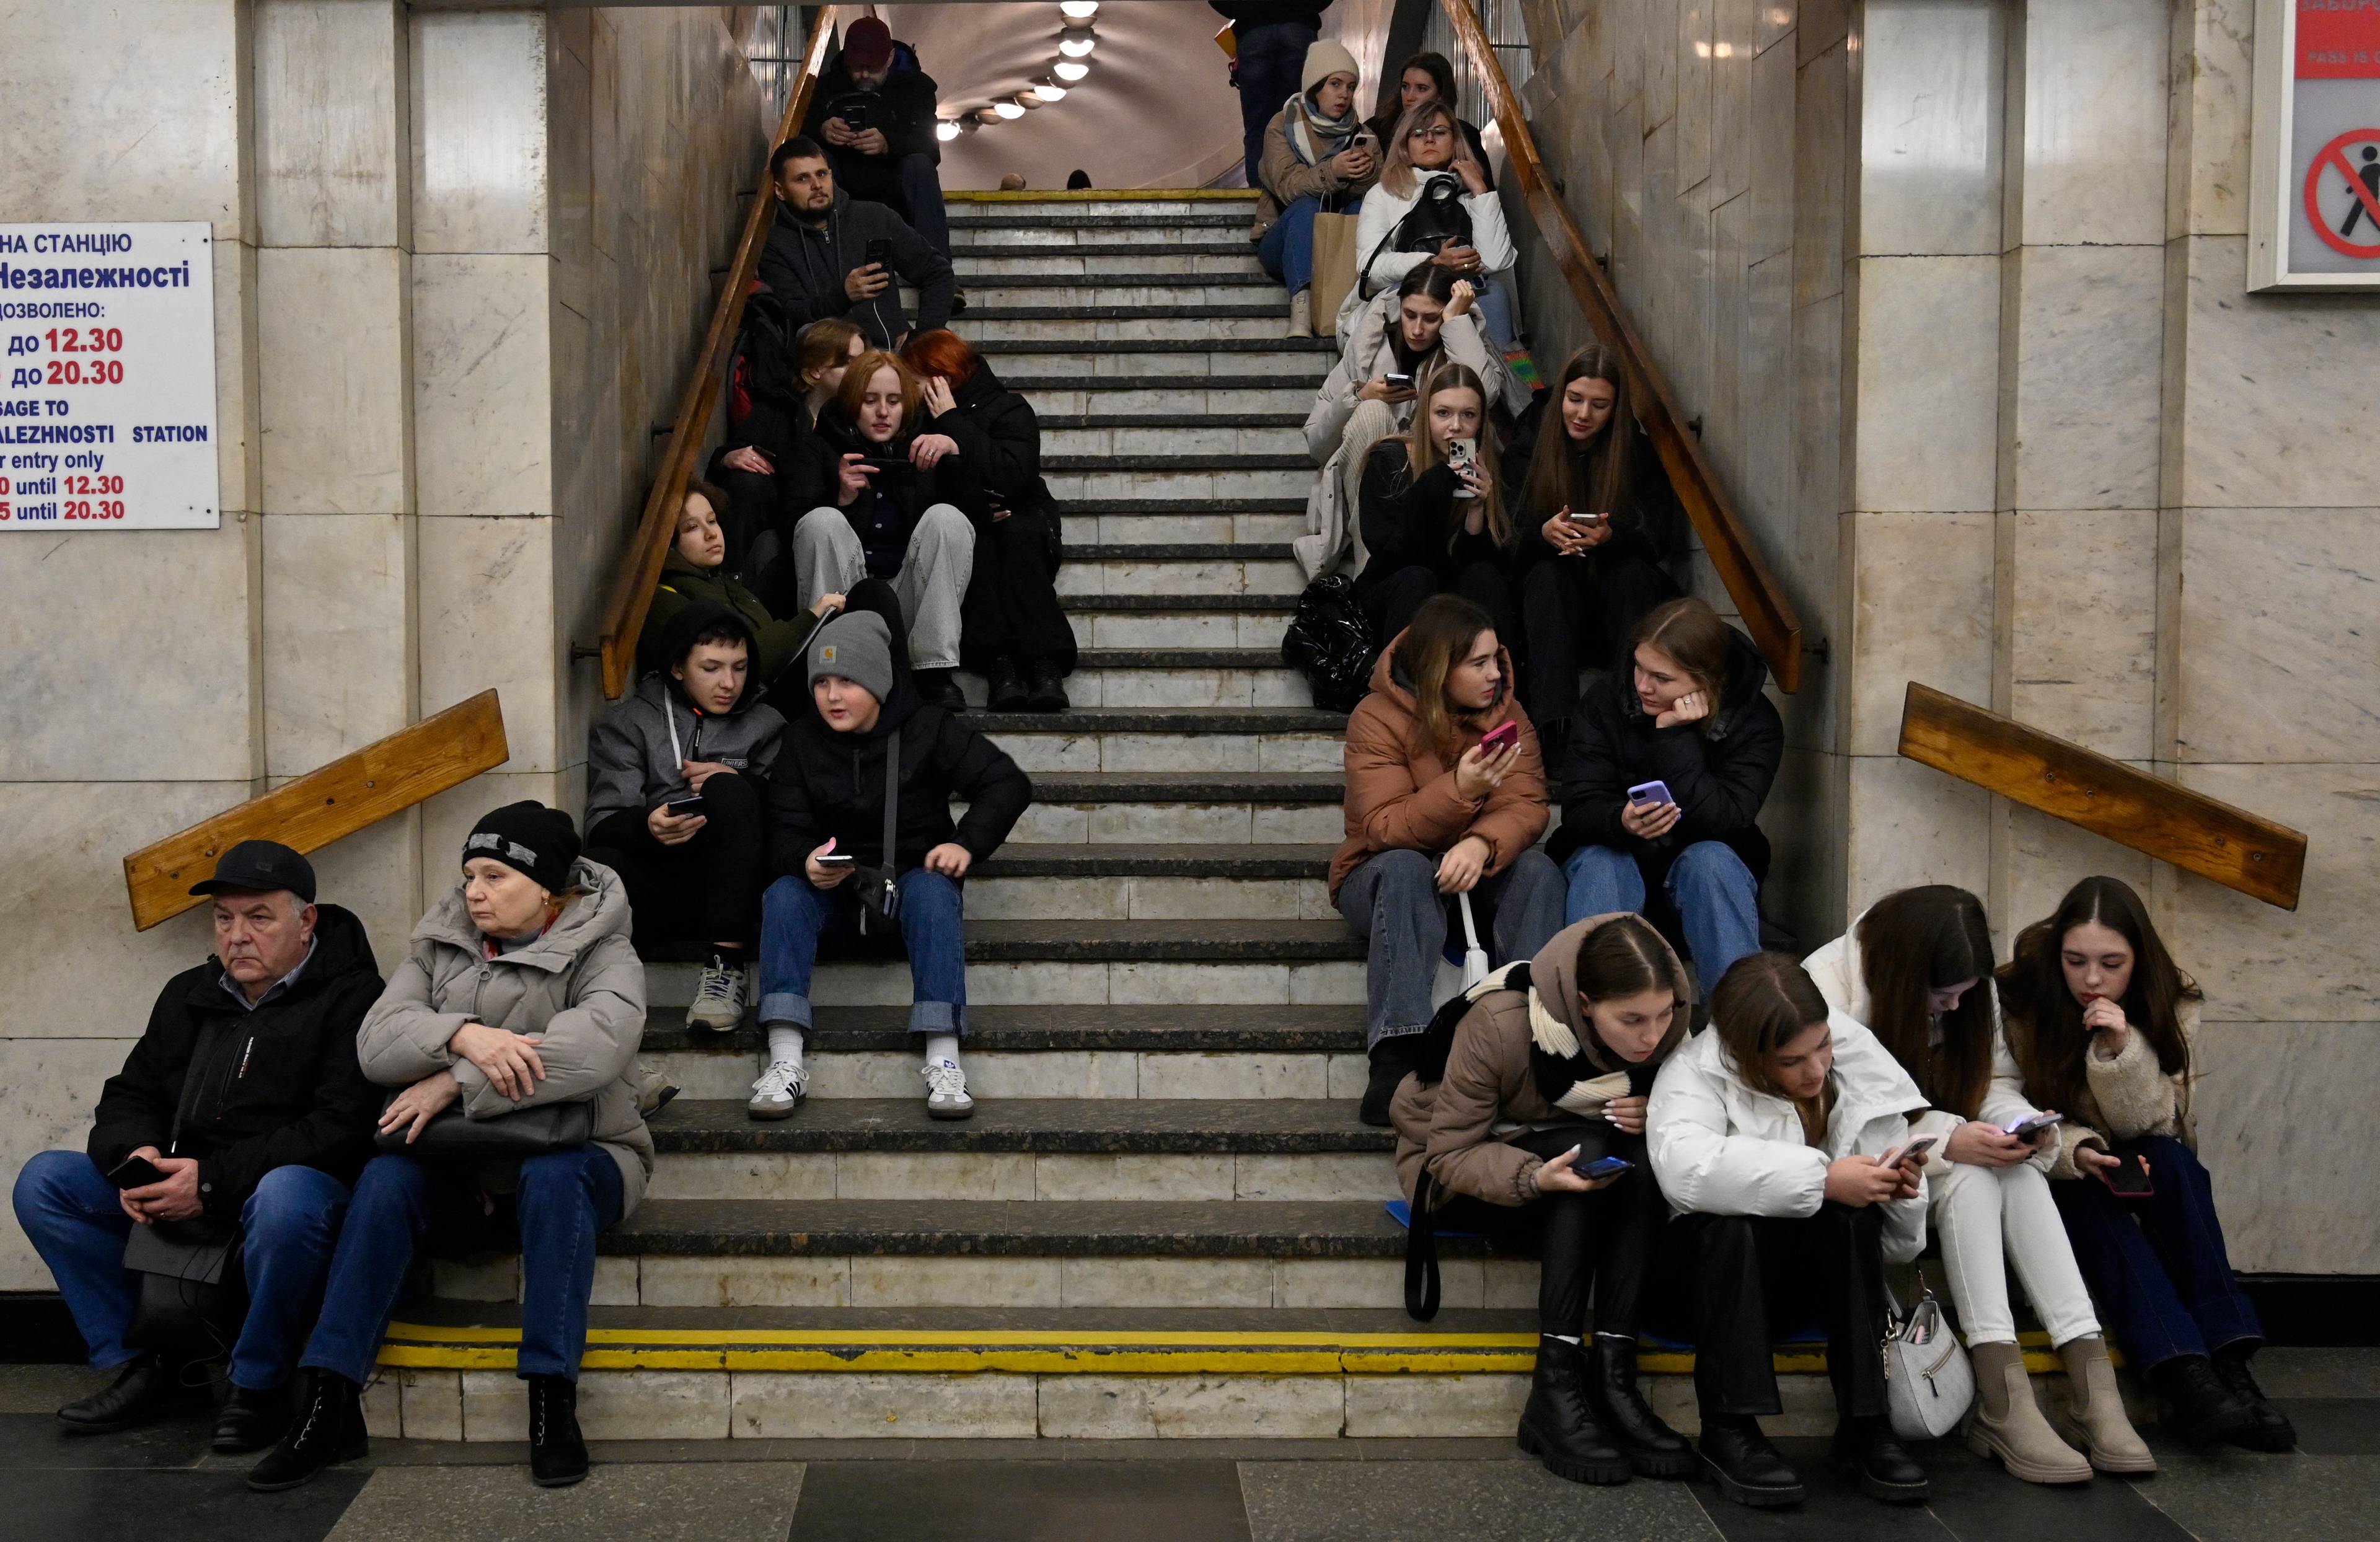 ludzie siedzący na schodach na stacji metra